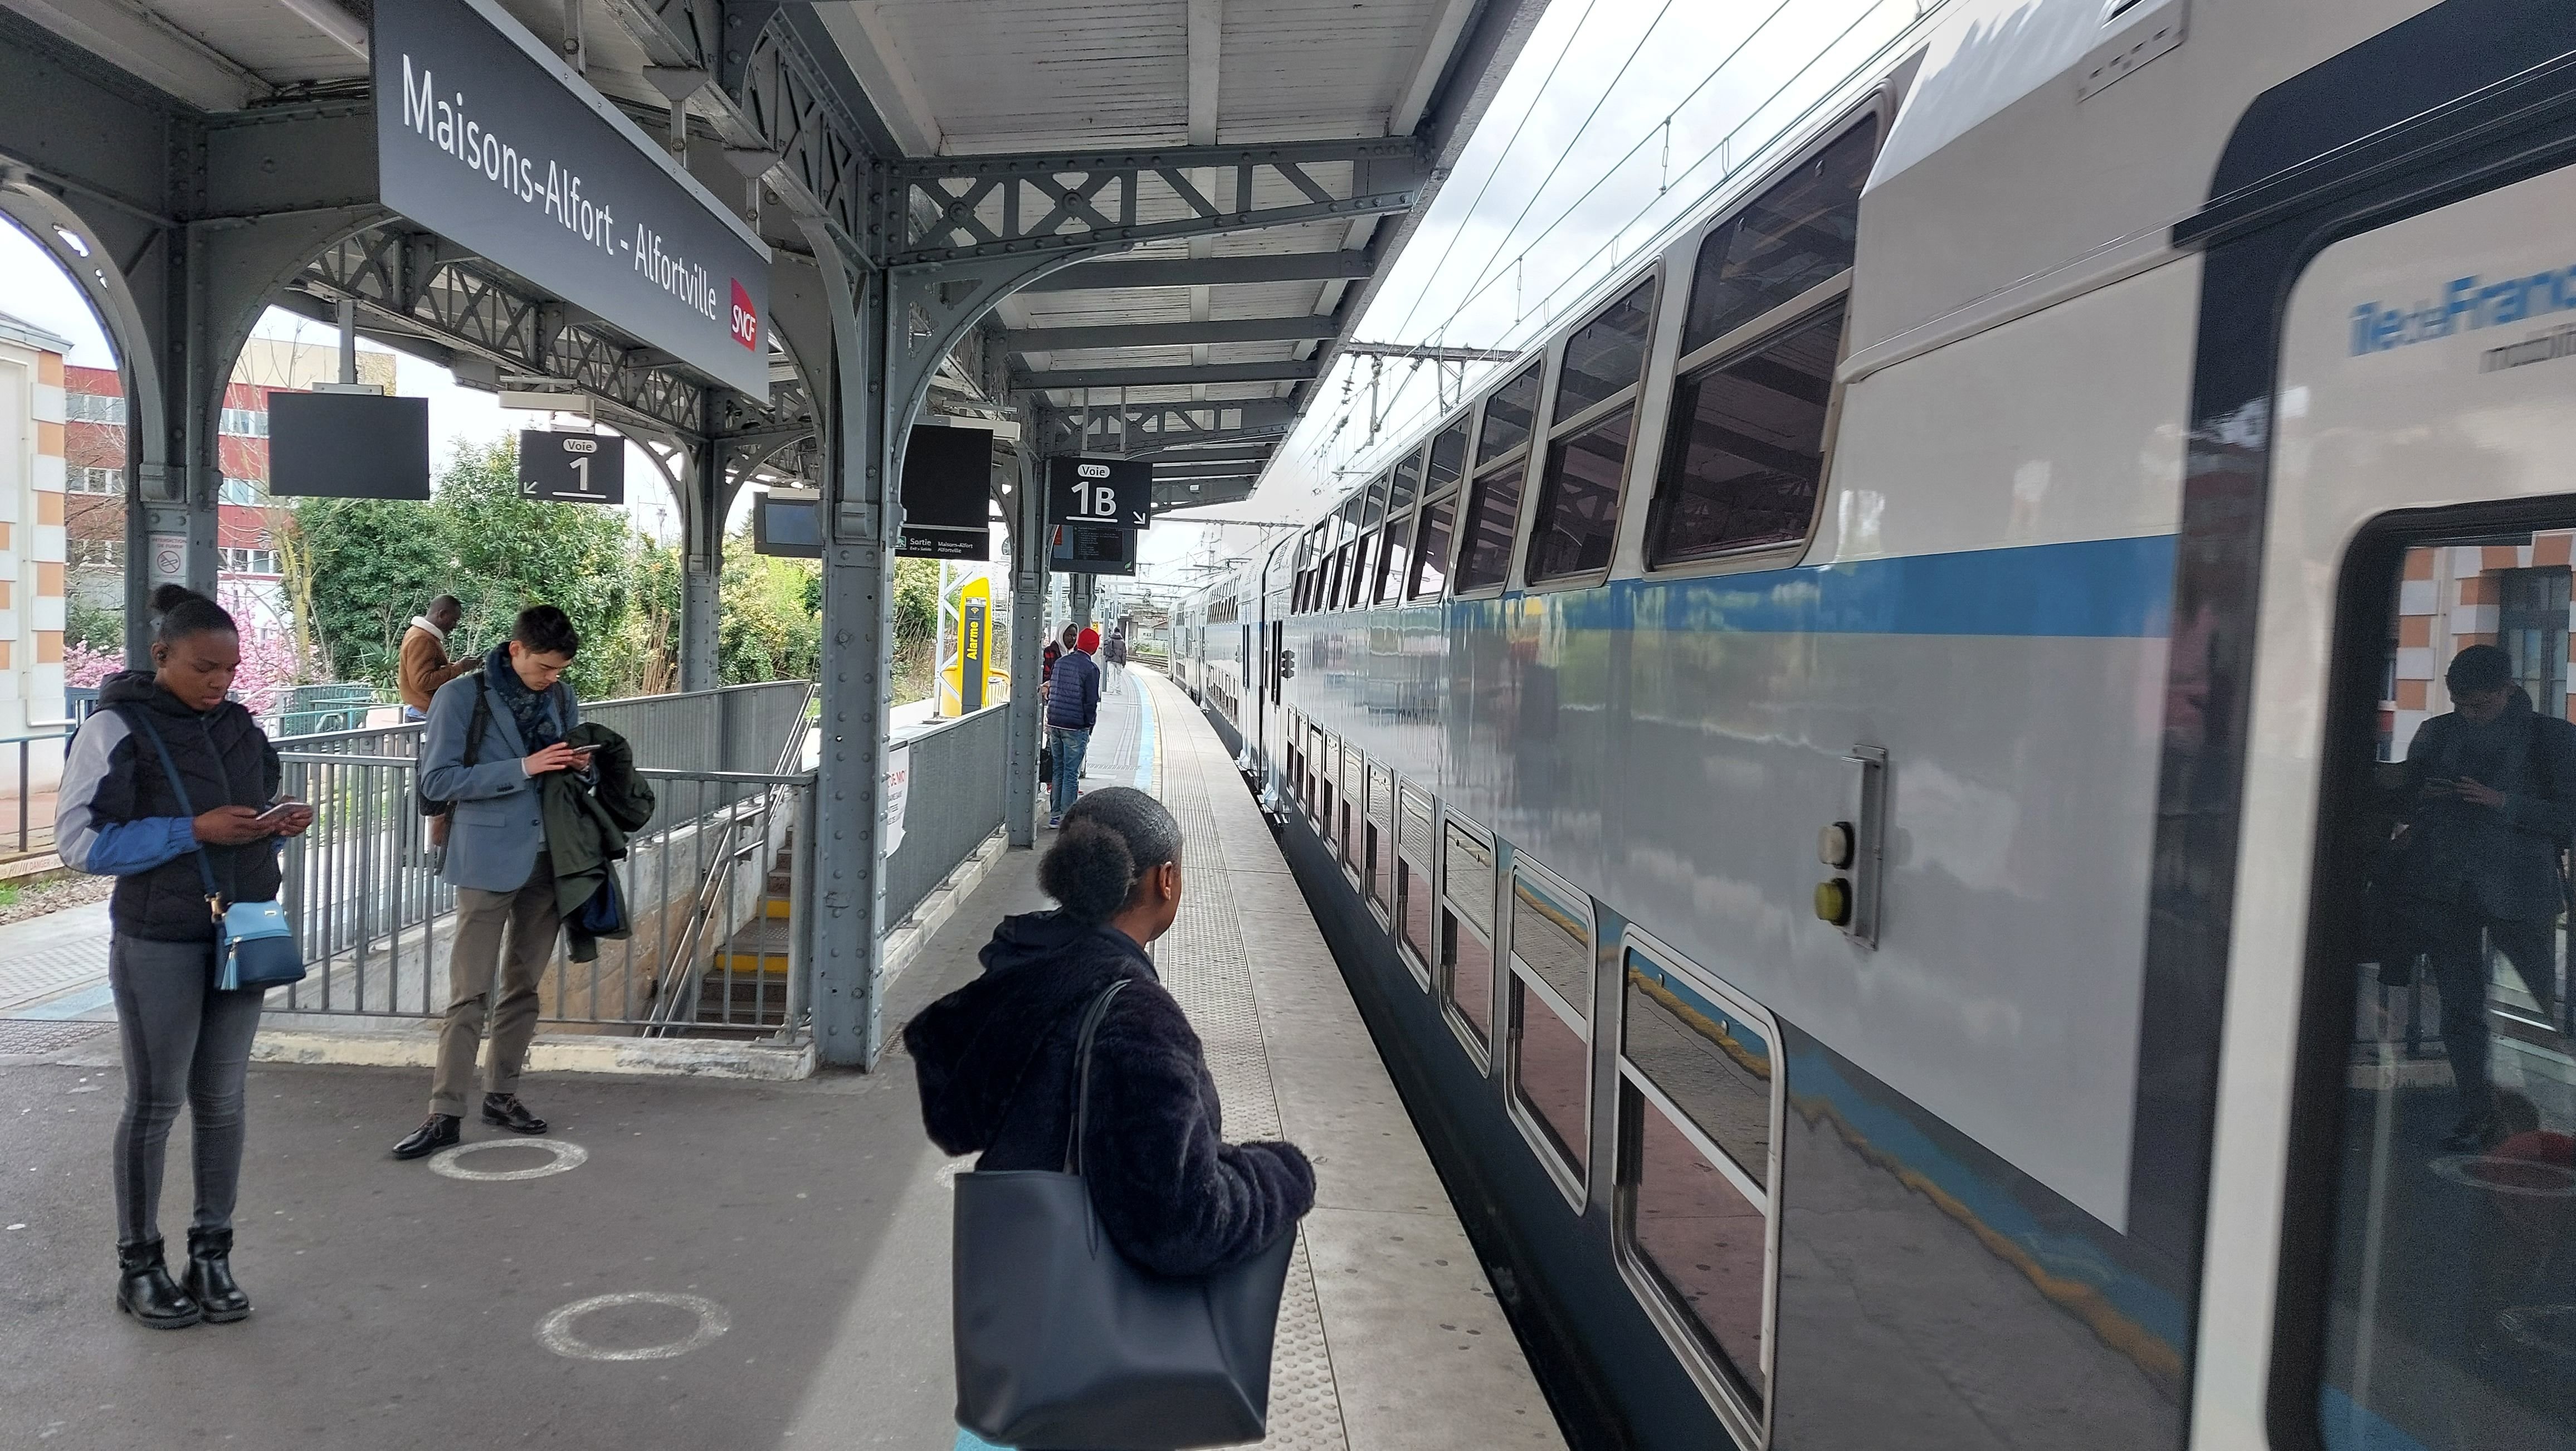 Maisons-Alfort (Val-de-Marne), le mardi 11 avril. La gare de Maisons-Alfort-Alfortville va faire l'objet d'aménagements pour assurer la sécurité des passagers dans les cas de passages rapides de trains sans arrêt. LP/Laure Parny